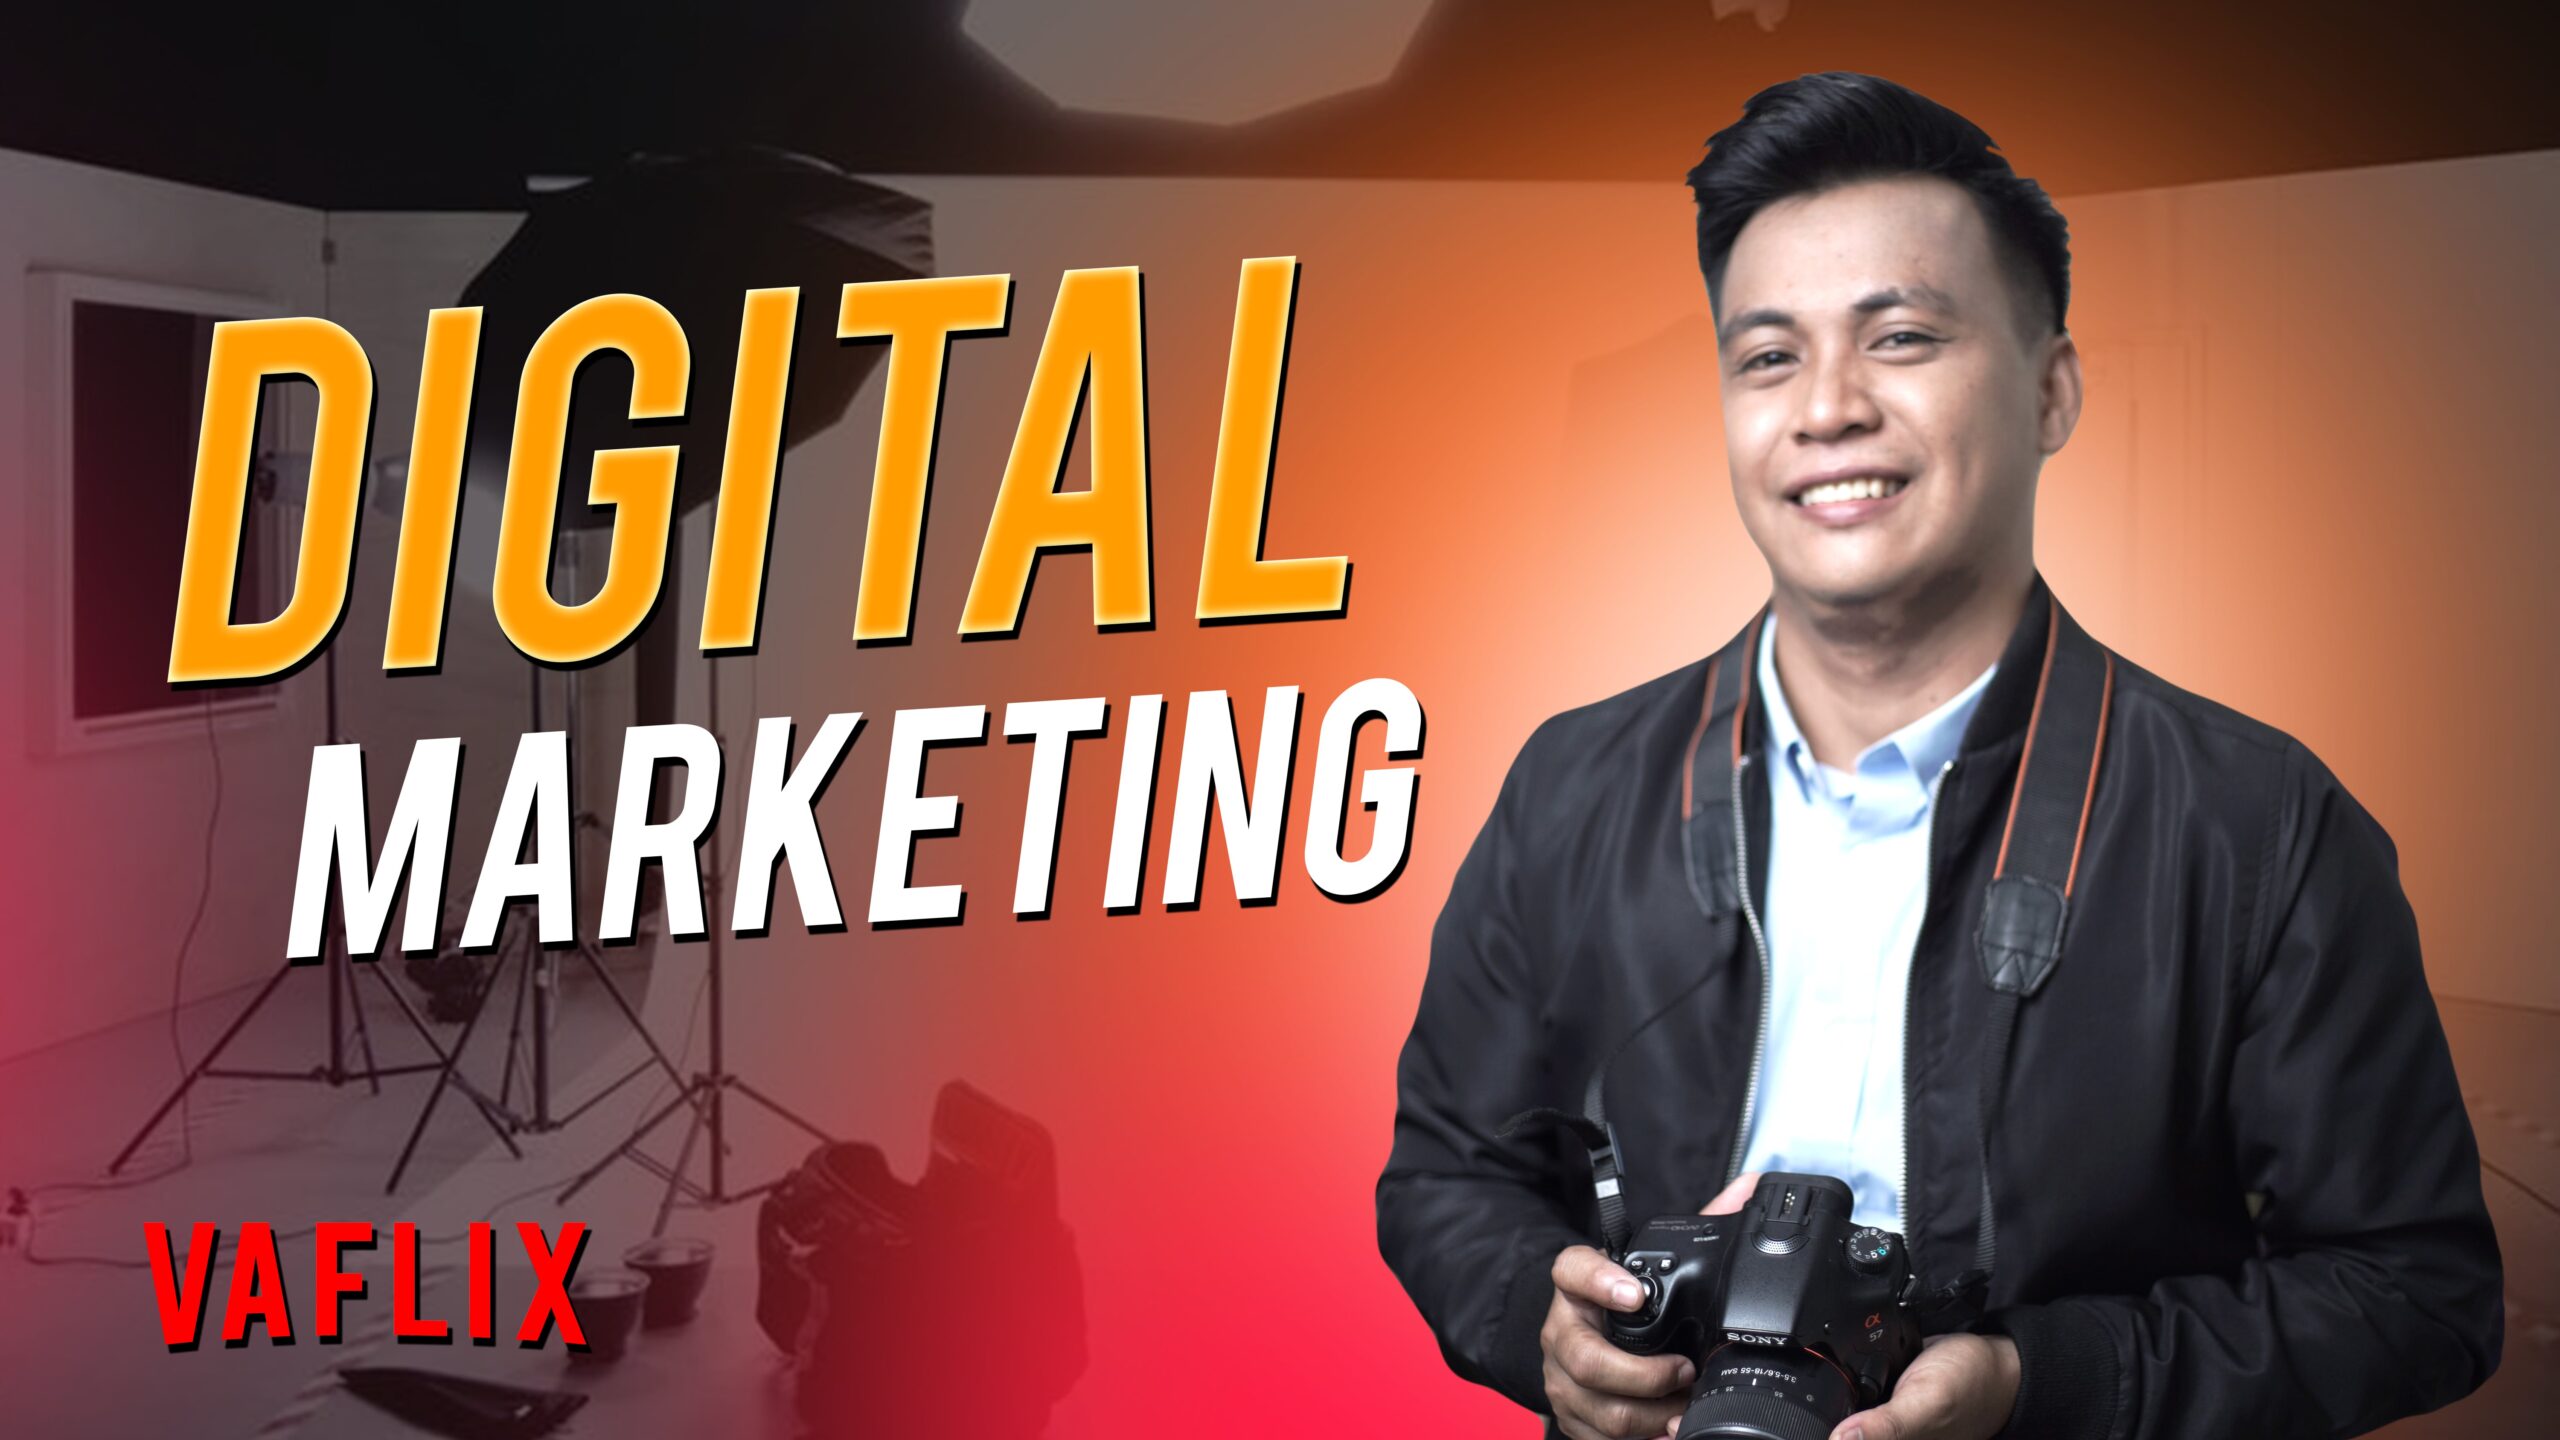 digitral marketing social media marketing philippines hire a virtual assistant va flix vaflix